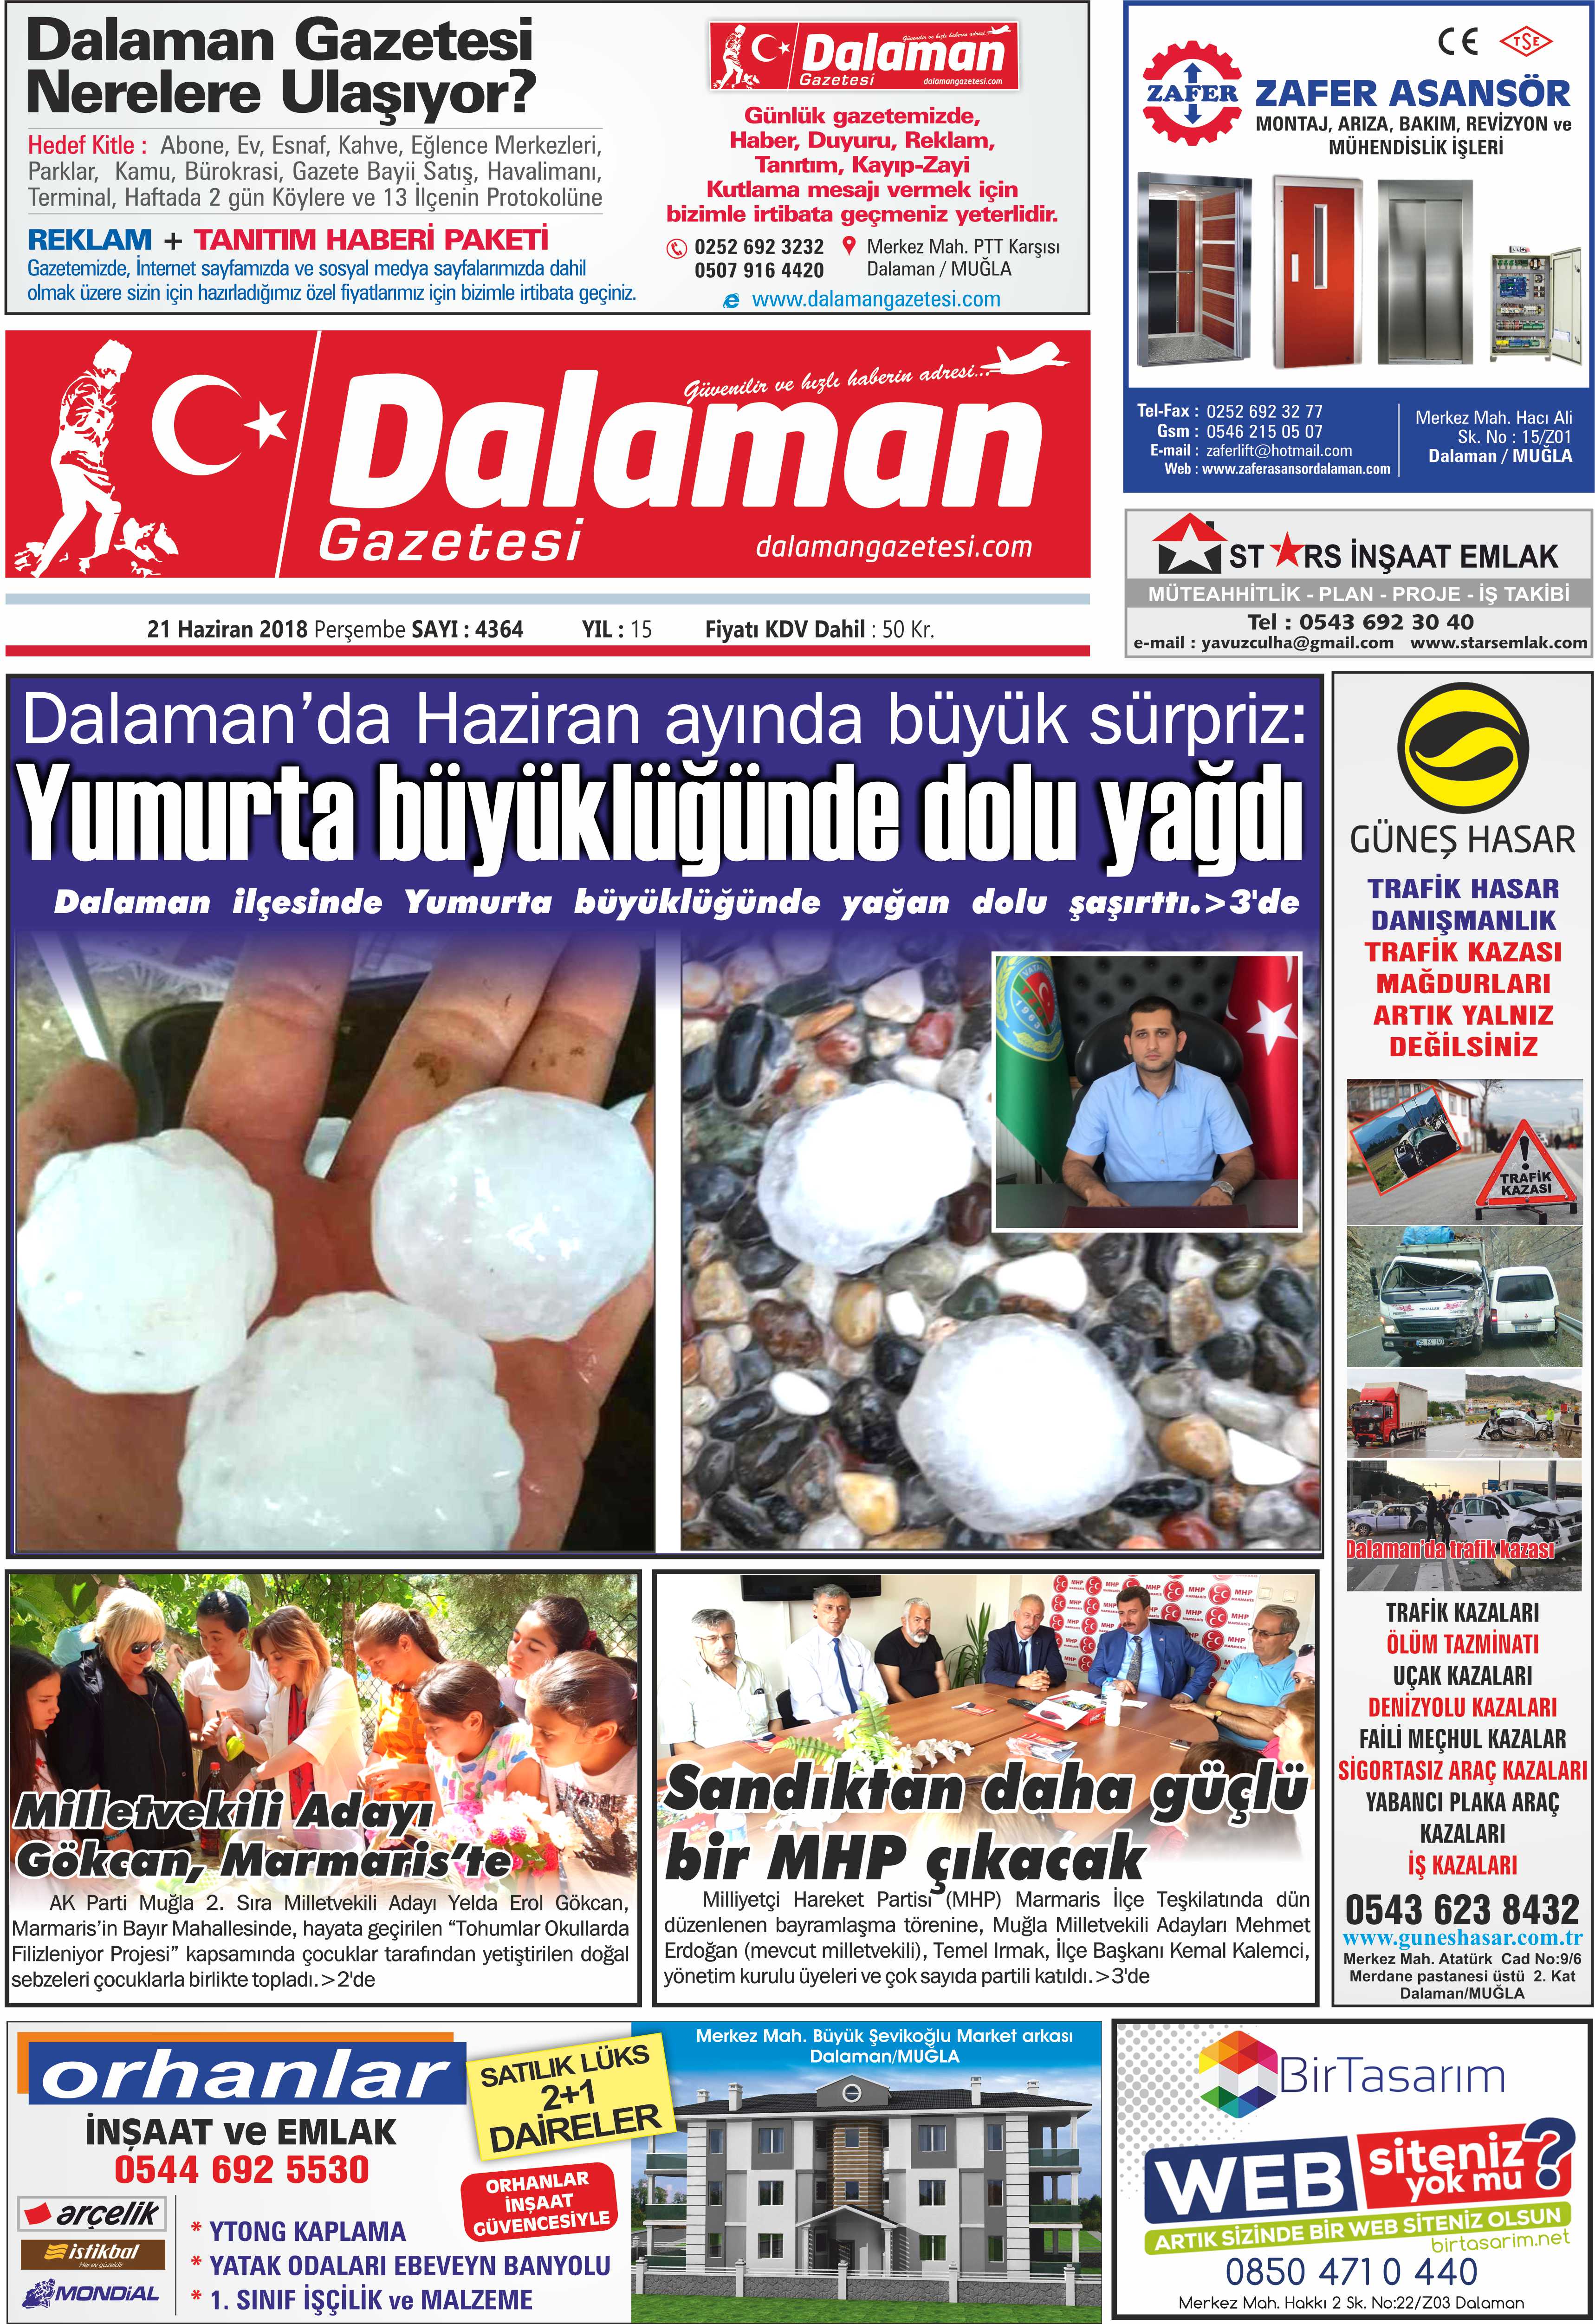 21.06.2018 0 - Dalaman Gazetesi'nden haber başlıkları